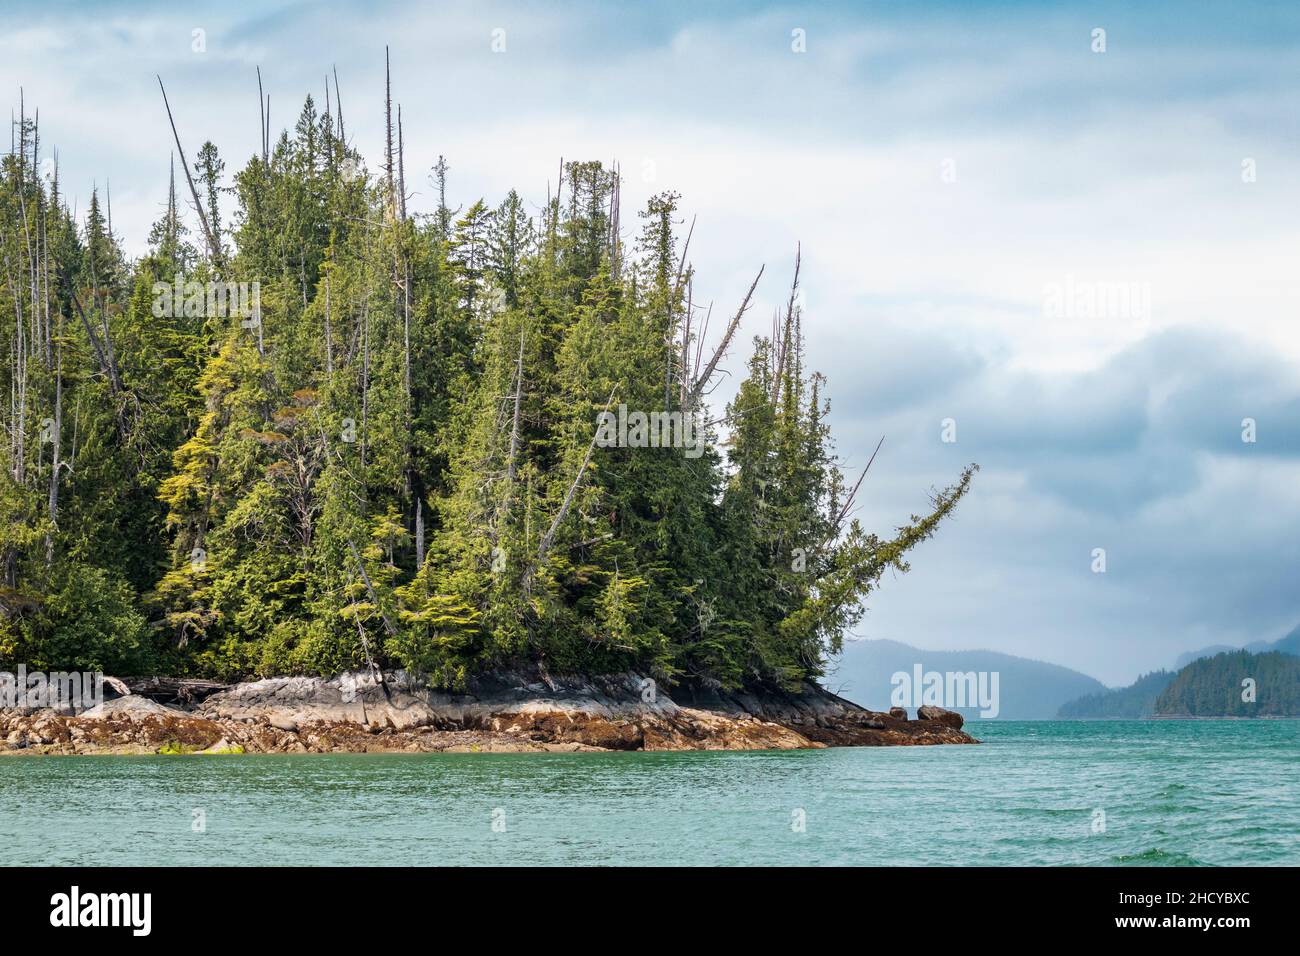 Une île côtière boisée près de l'embouchure de Kingcome Inlet (Colombie-Britannique).La fonte glaciaire contribue à la couleur remarquable de l'eau de mer. Banque D'Images